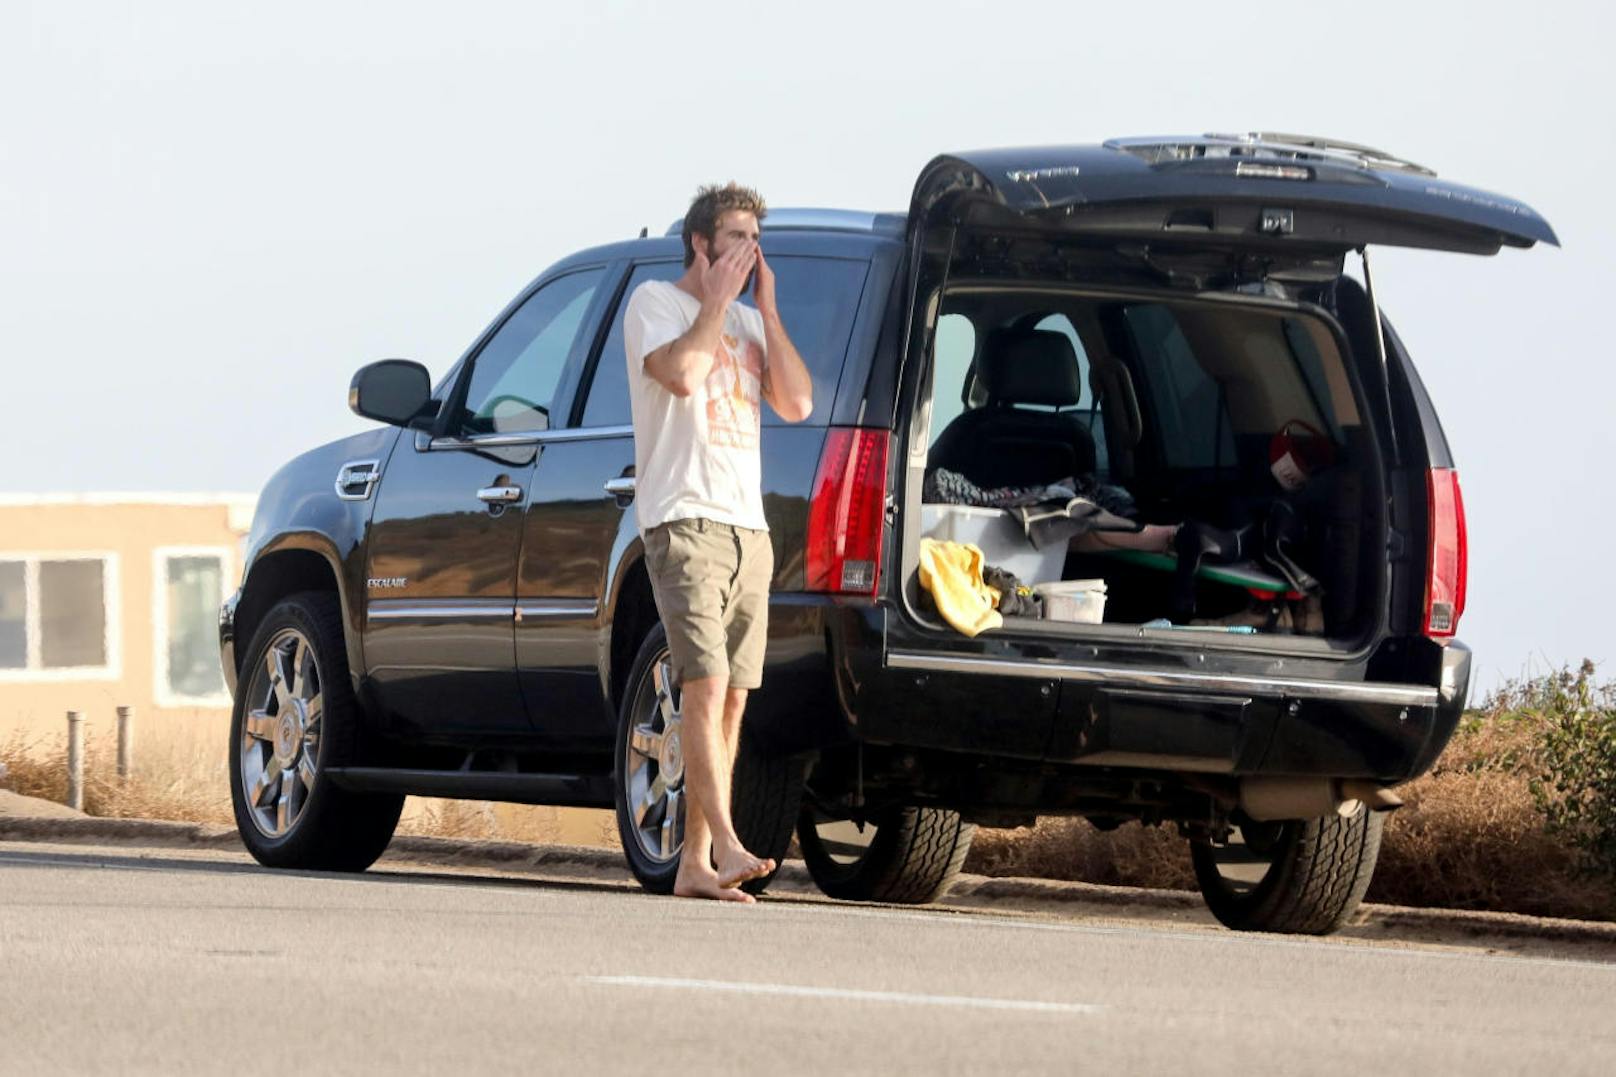 Der große Augenblick für Zuschauer kam nach dem Surfen. Liam fühlte sich unbeobachtet und zog sich neben seinem SUV um